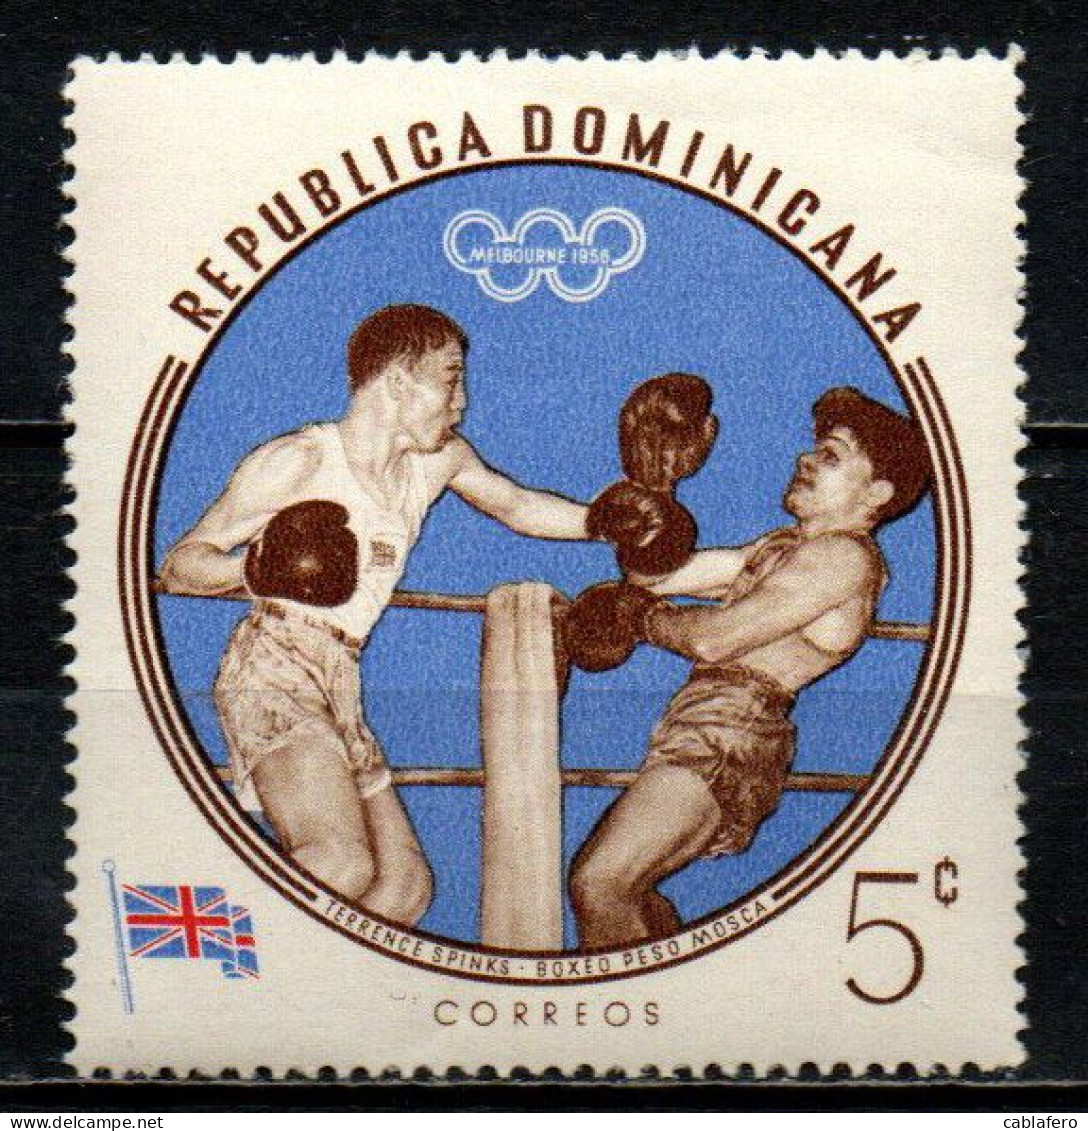 REPUBBLICA DOMENICANA - 1960 - TERRENCE SPINKS - OLIMPIADI DI MELBOURNE -MNH - Dominican Republic